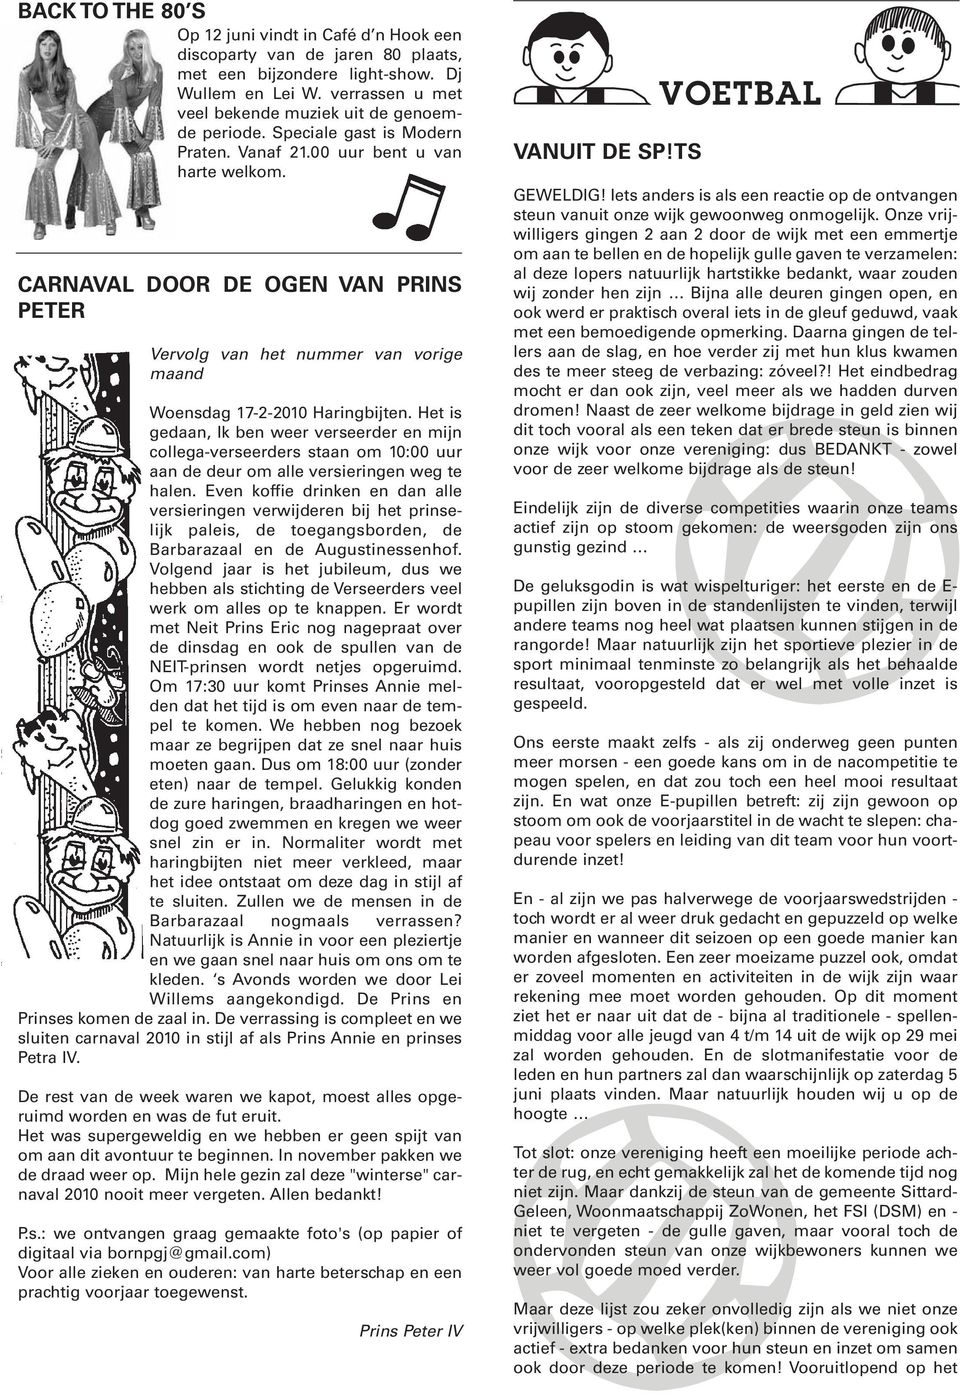 CARNAVAL DOOR DE OGEN VAN PRINS PETER Vervolg van het nummer van vorige maand Woensdag 17-2-2010 Haringbijten.